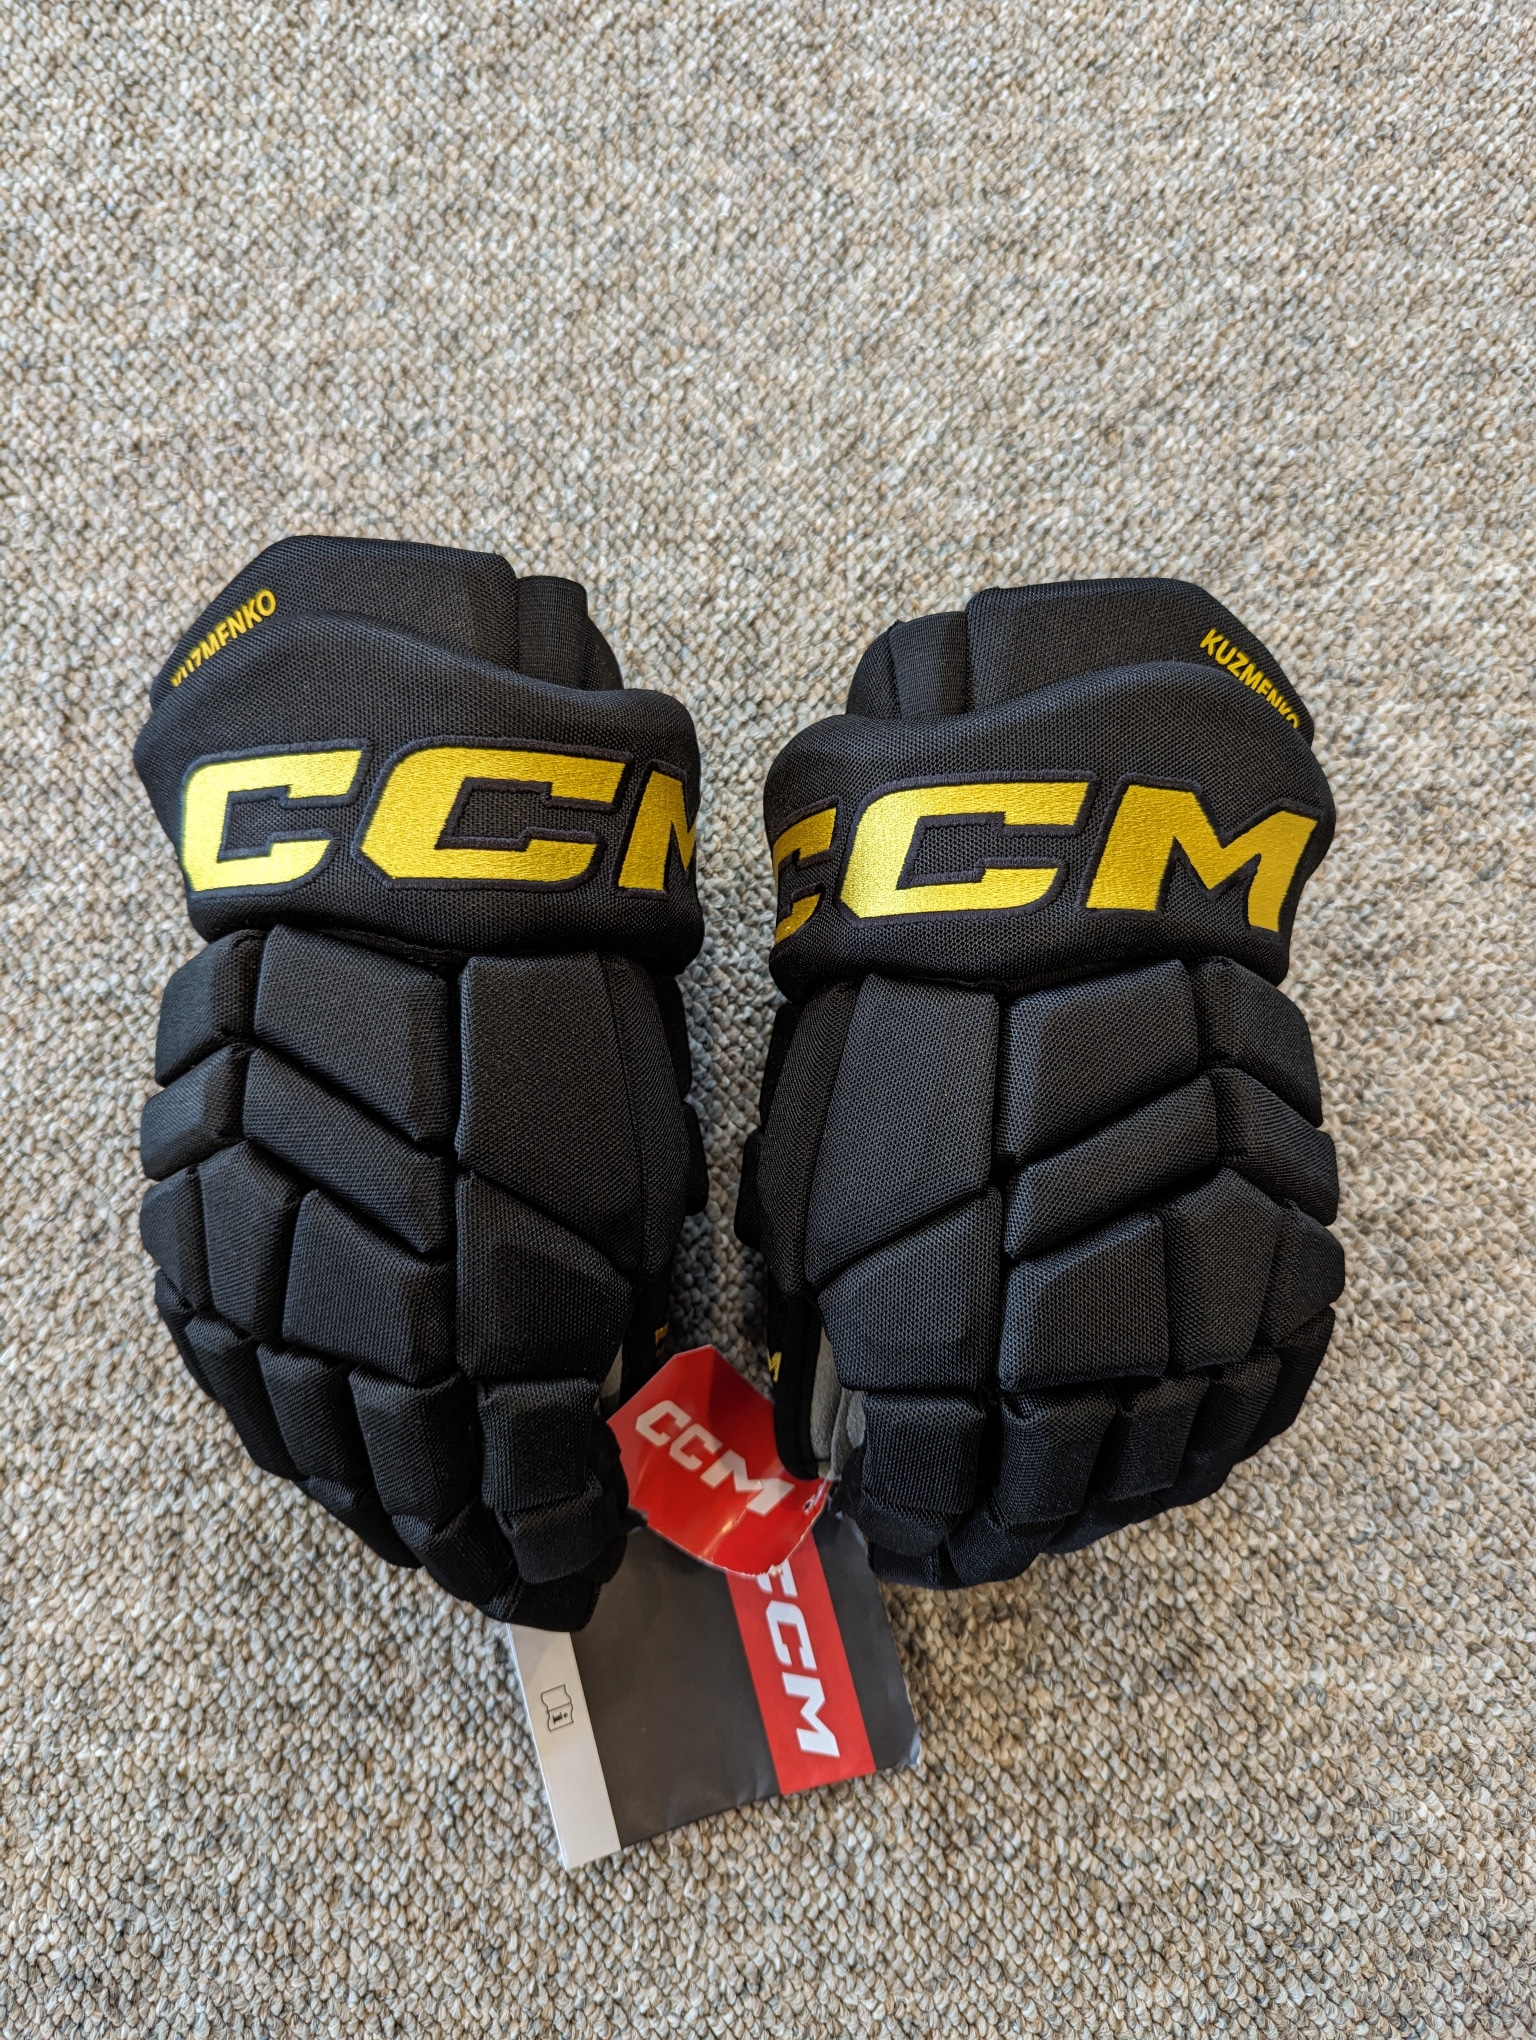 Vancouver Canucks Black Skate CCM Pro Stock 14" Hockey Gloves - KUZMENKO